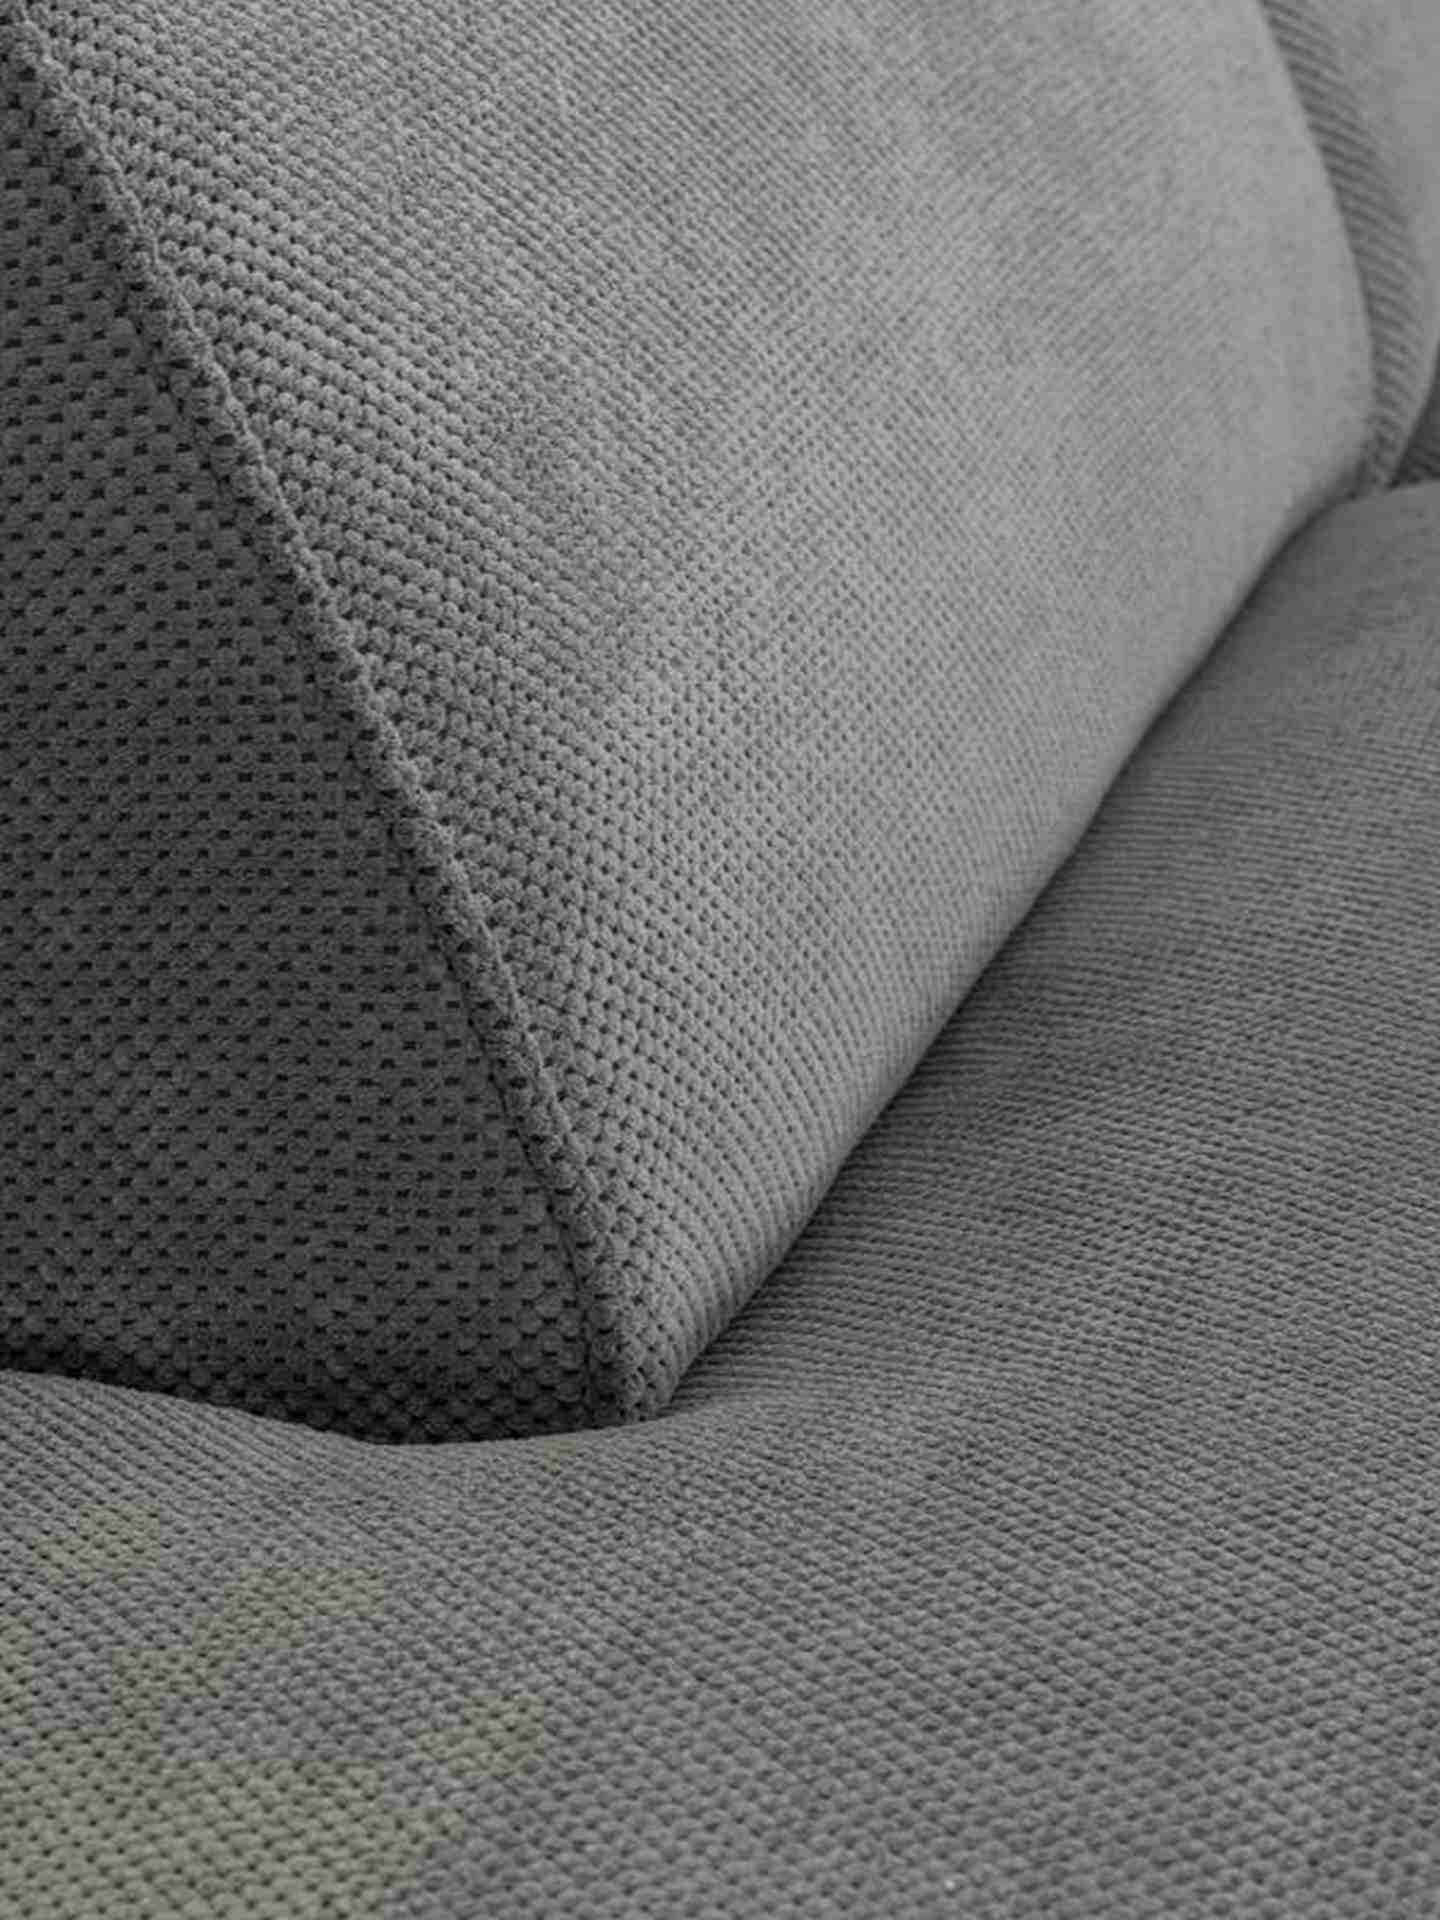 Das Ecksofa Cliff wurde aus weichem Stoff gefertigt, welcher einen Grauen Farbton besitzt. Das Sofa überzeugt mit seinem modernem Design. Diese Variante hat die Ausführung Rechts.